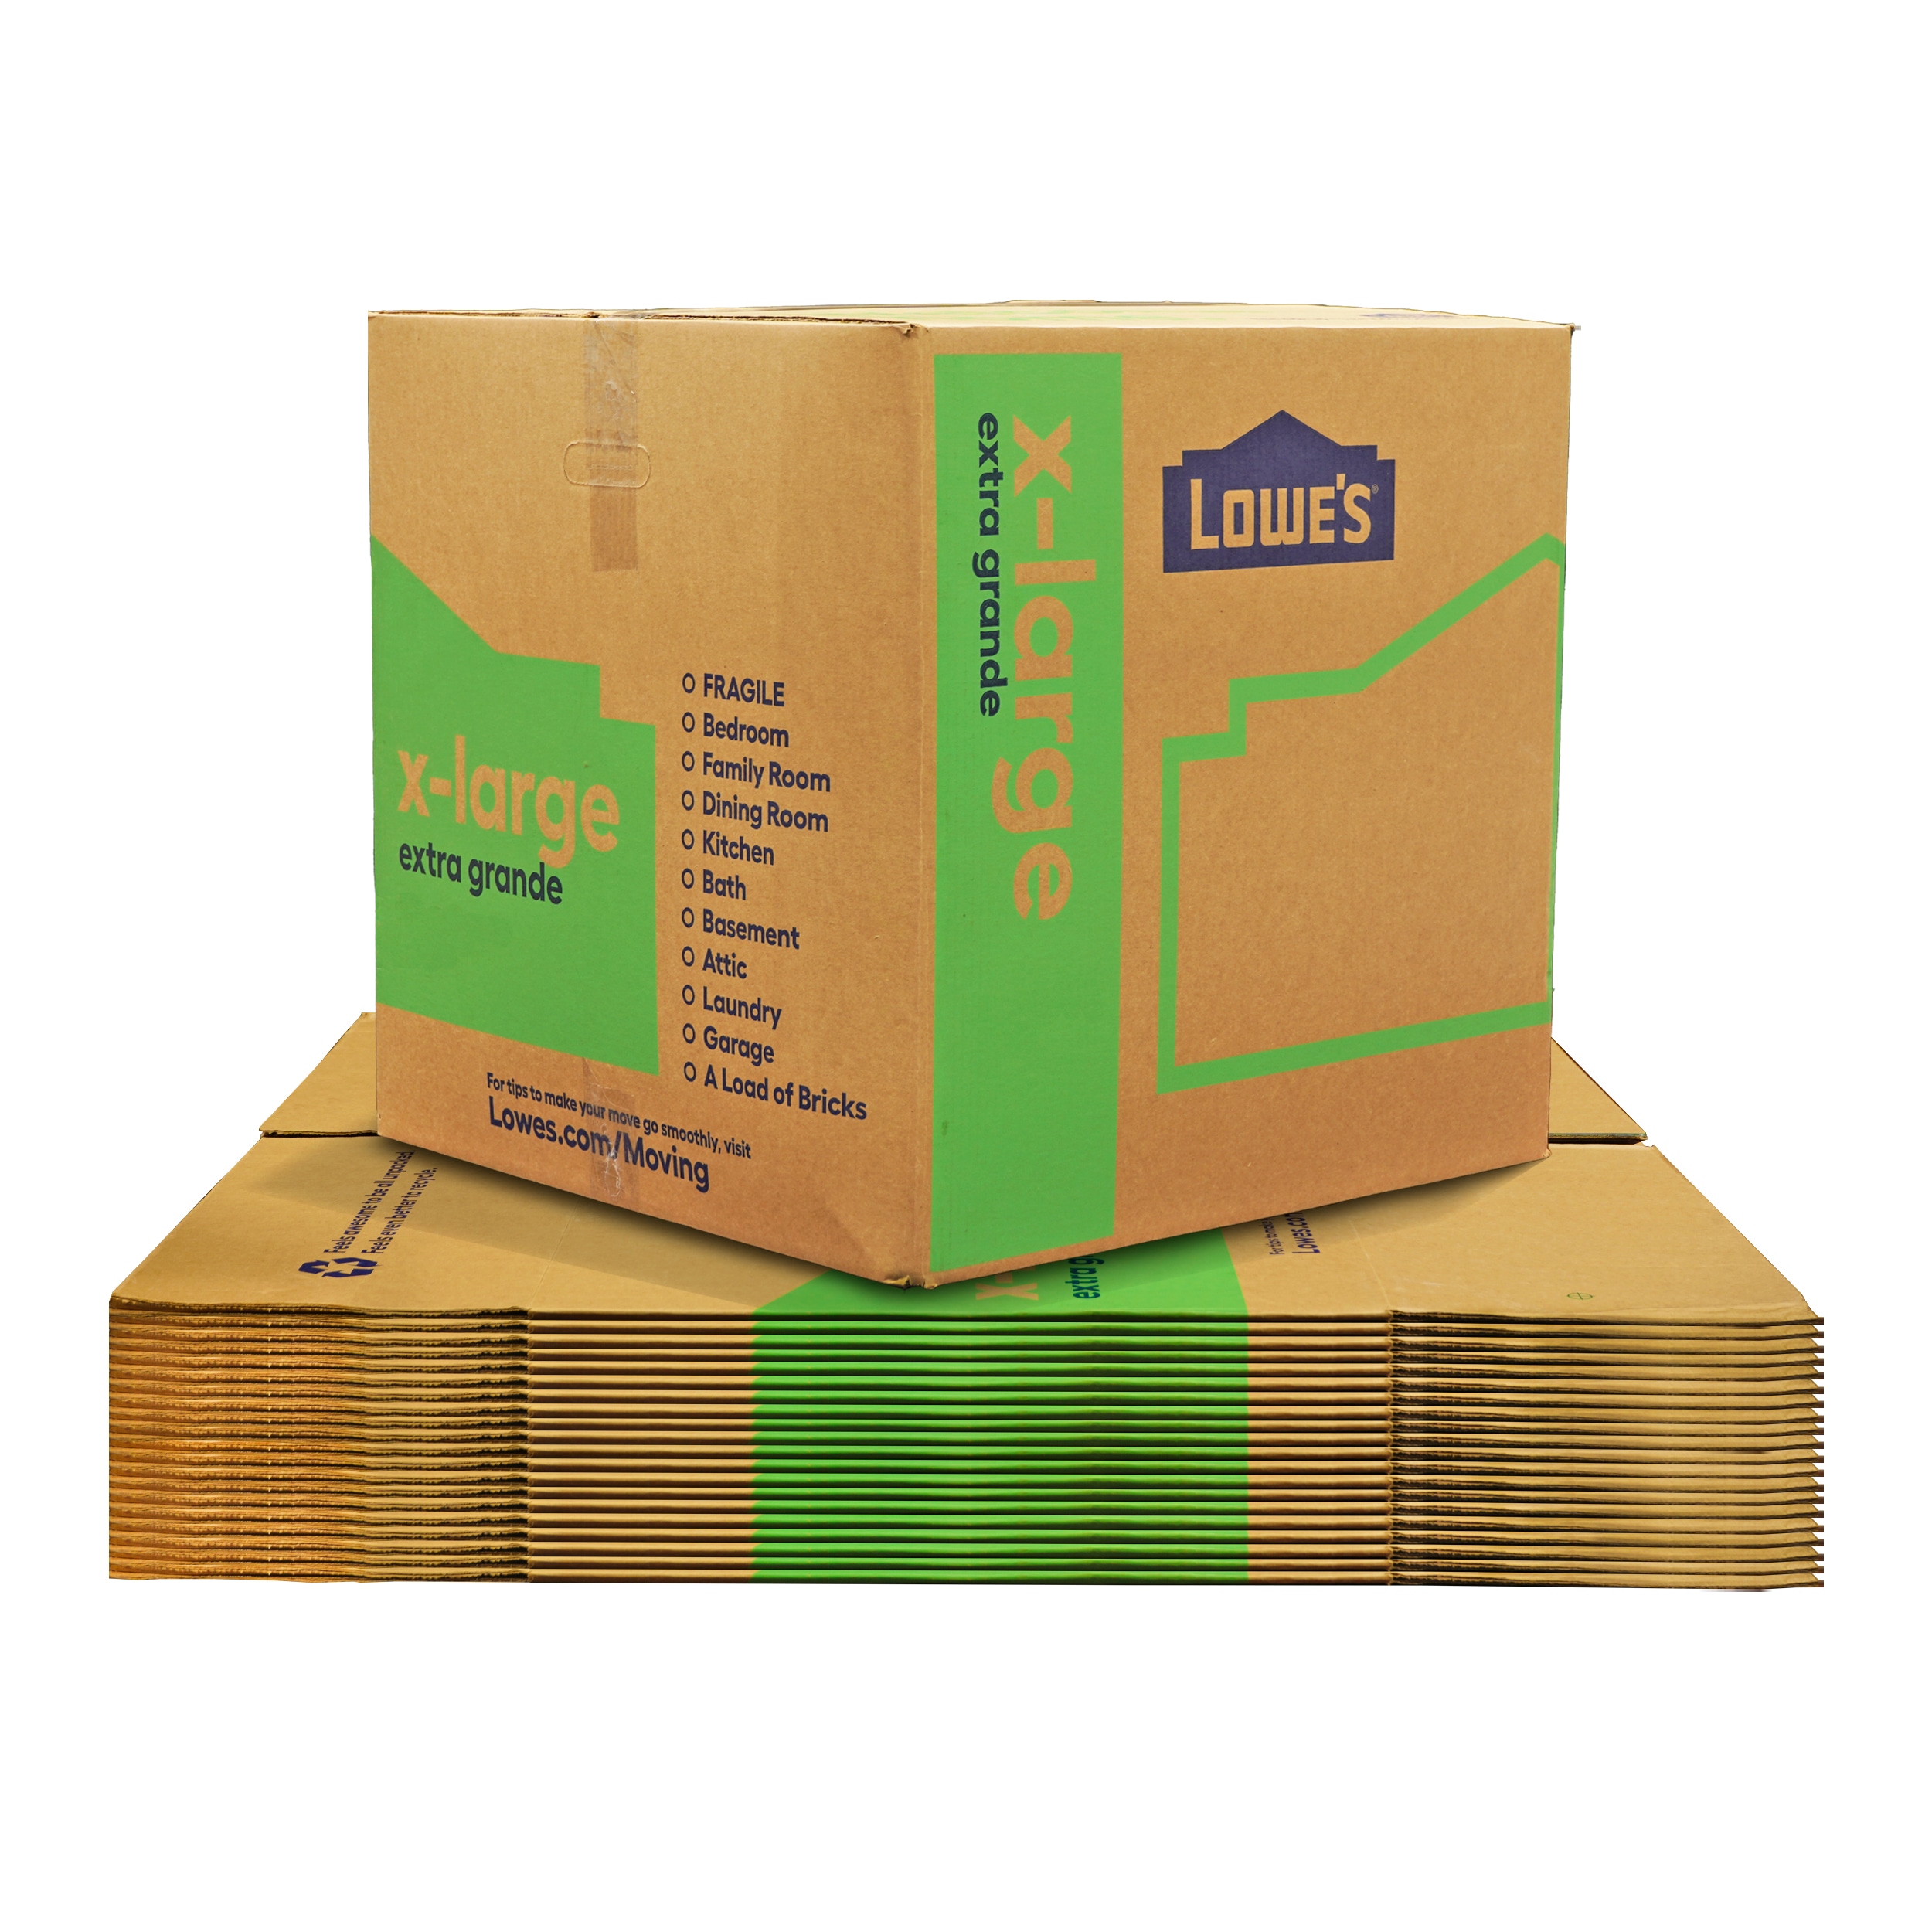 Carton box with flaps 3VVL - 300x200x150 mm (L x W x H)